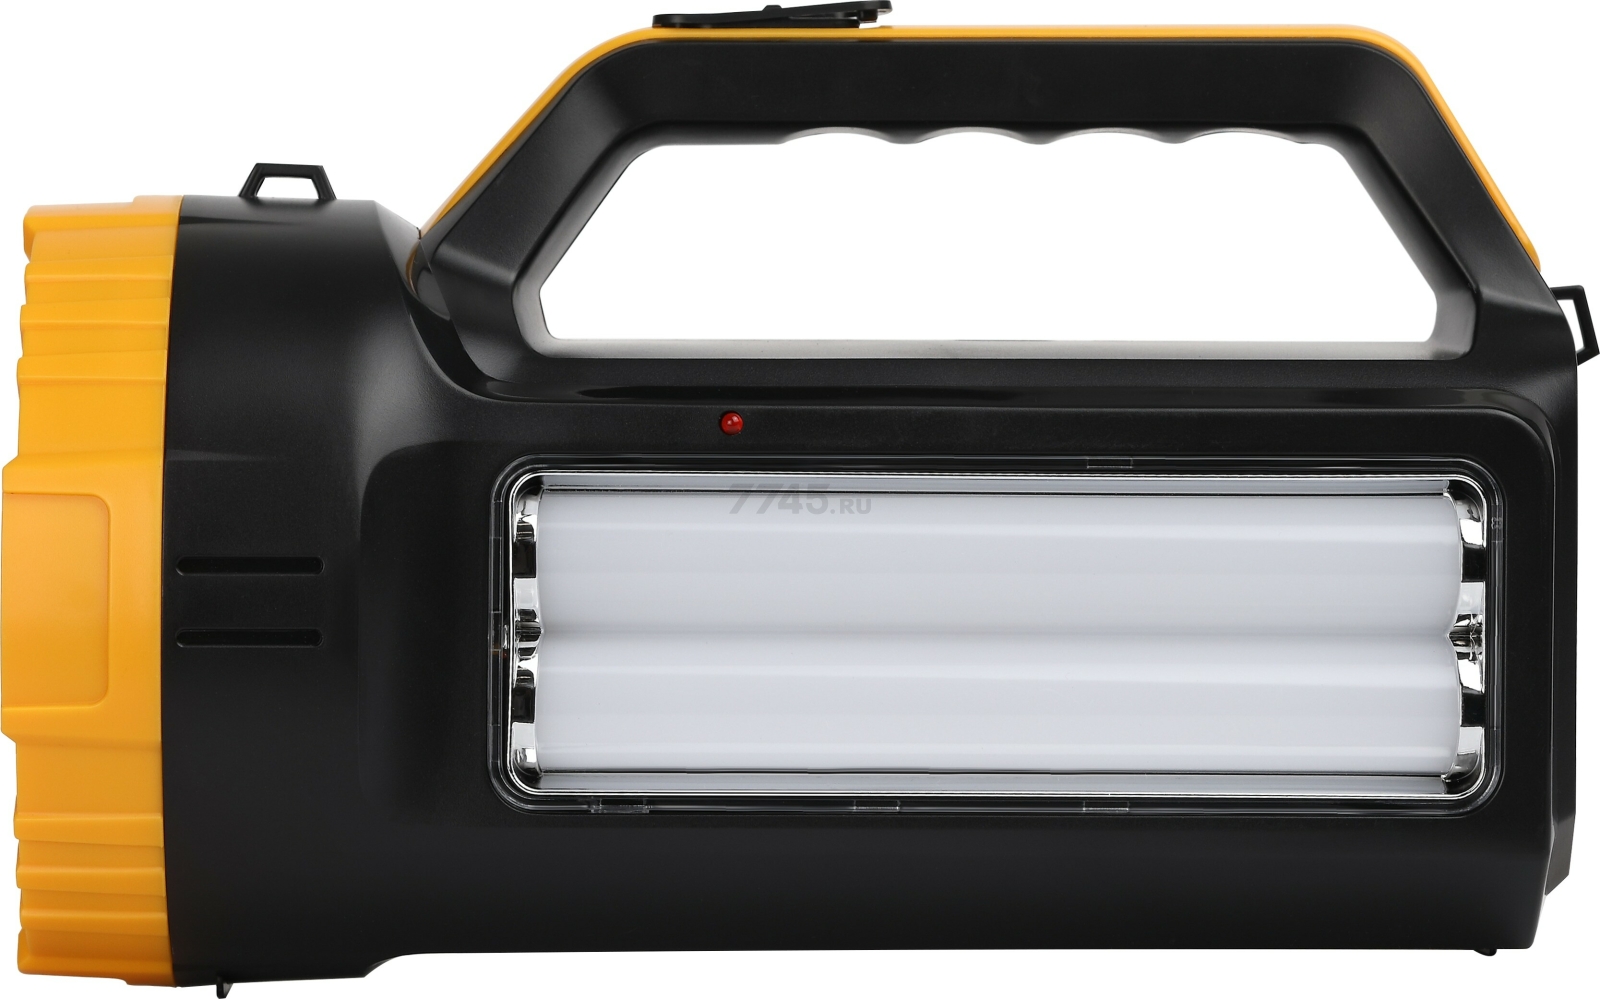 Фонарь светодиодный аккумуляторный 7 Вт ТРОФИ PA-301 черный, желтый - Фото 2